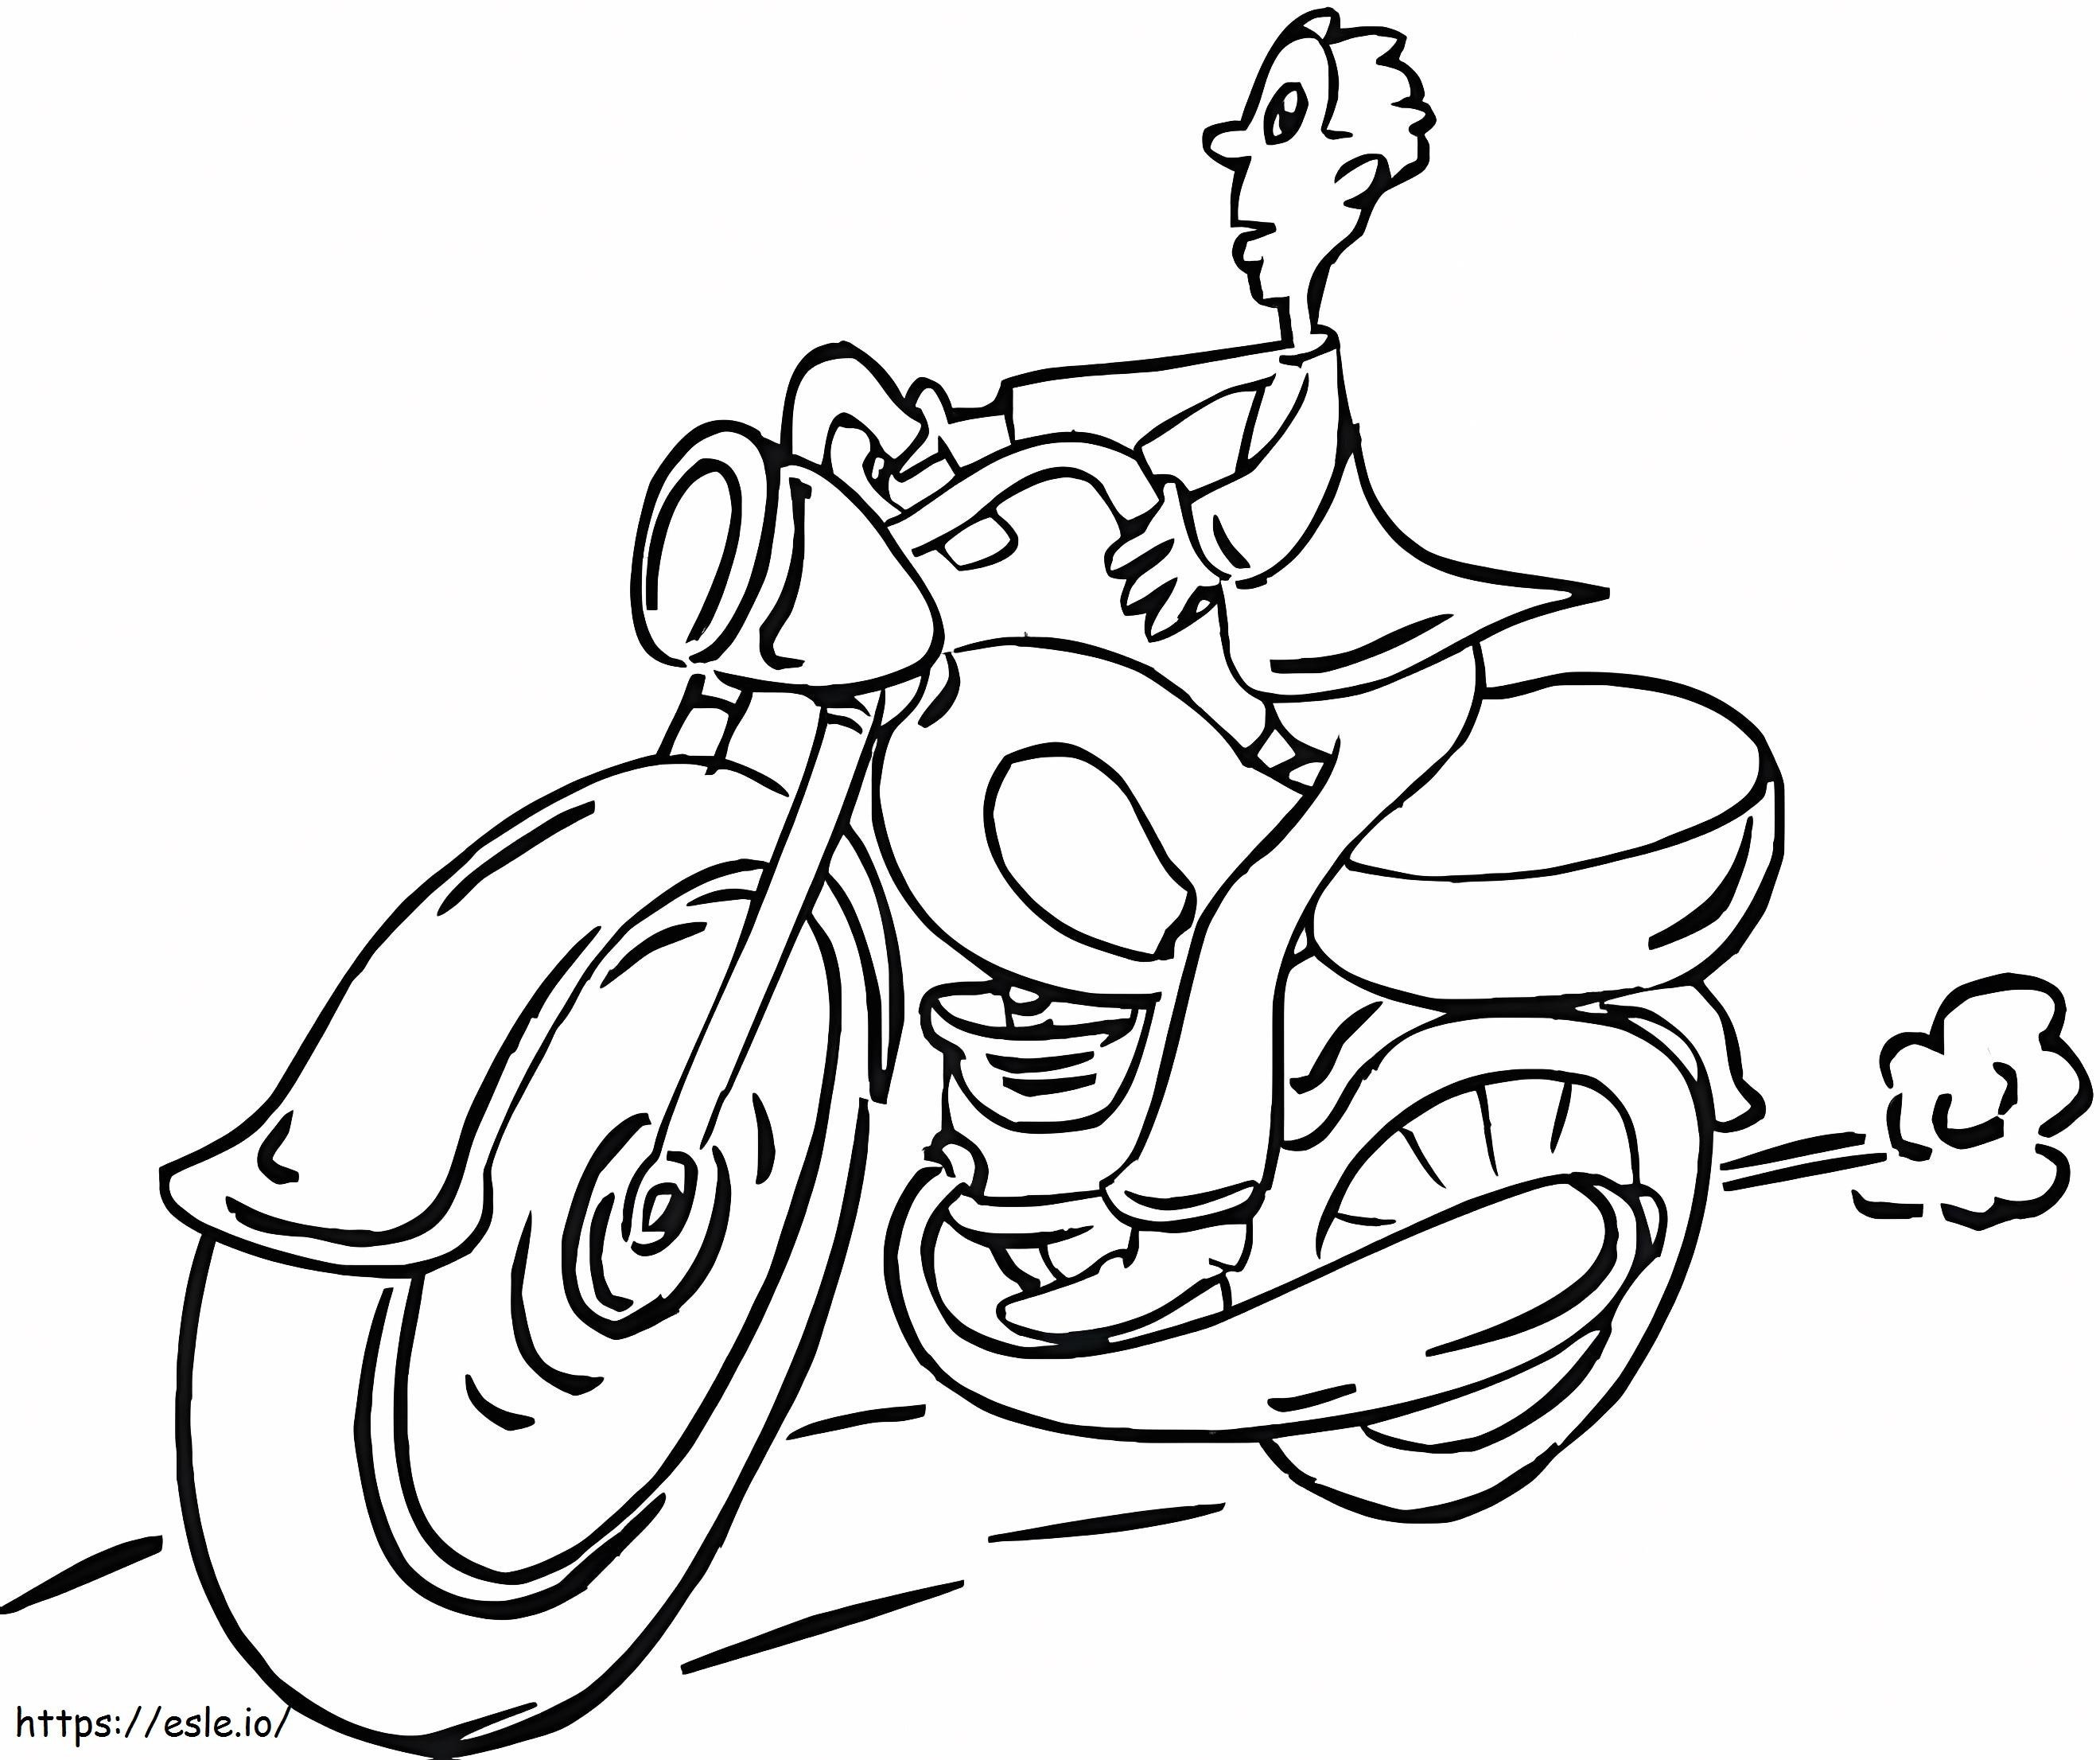 Man op motorfiets kleurplaat kleurplaat